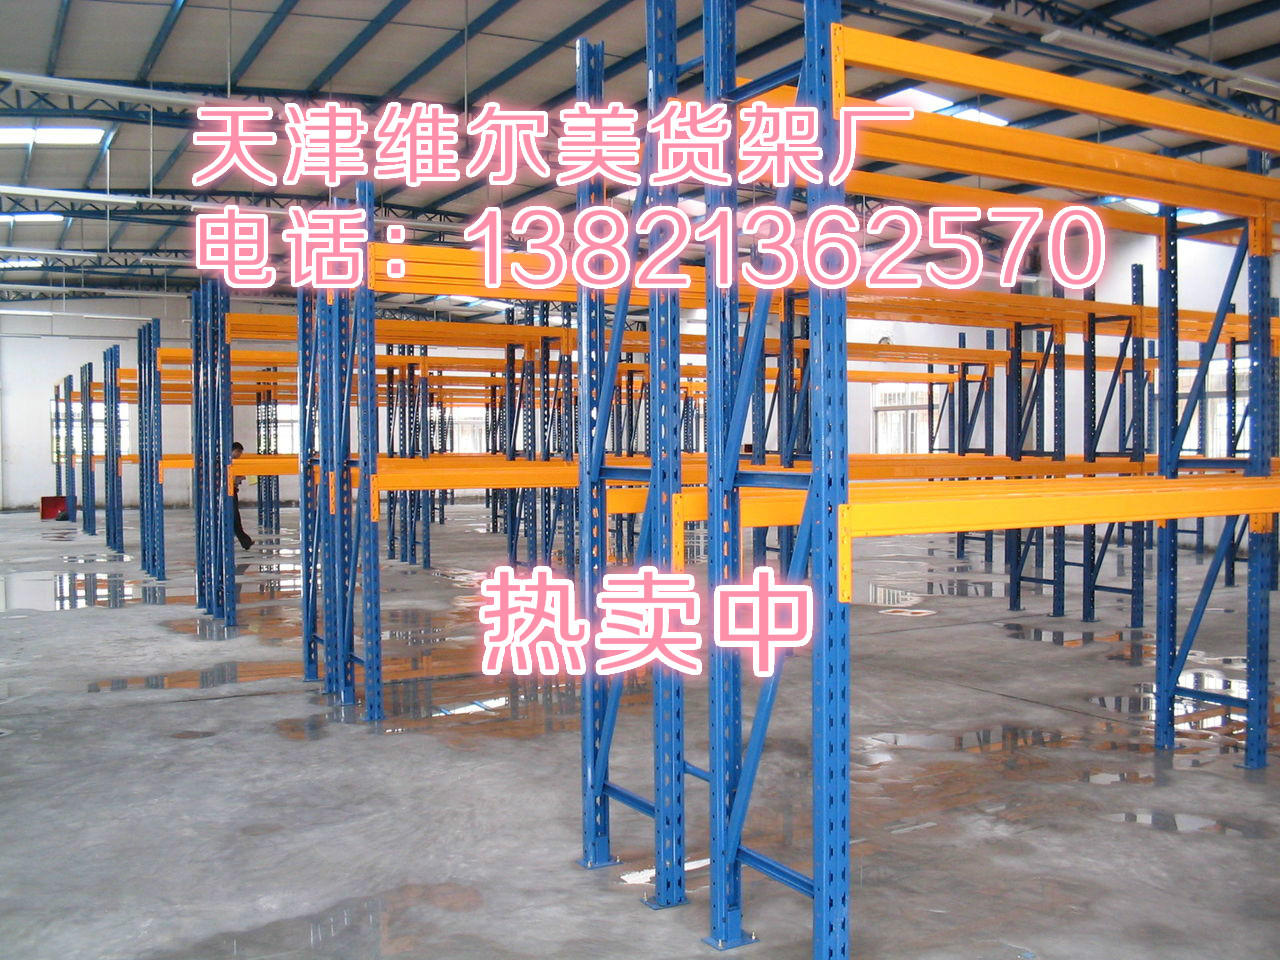 天津维尔美货架厂定做天津重型仓储货架